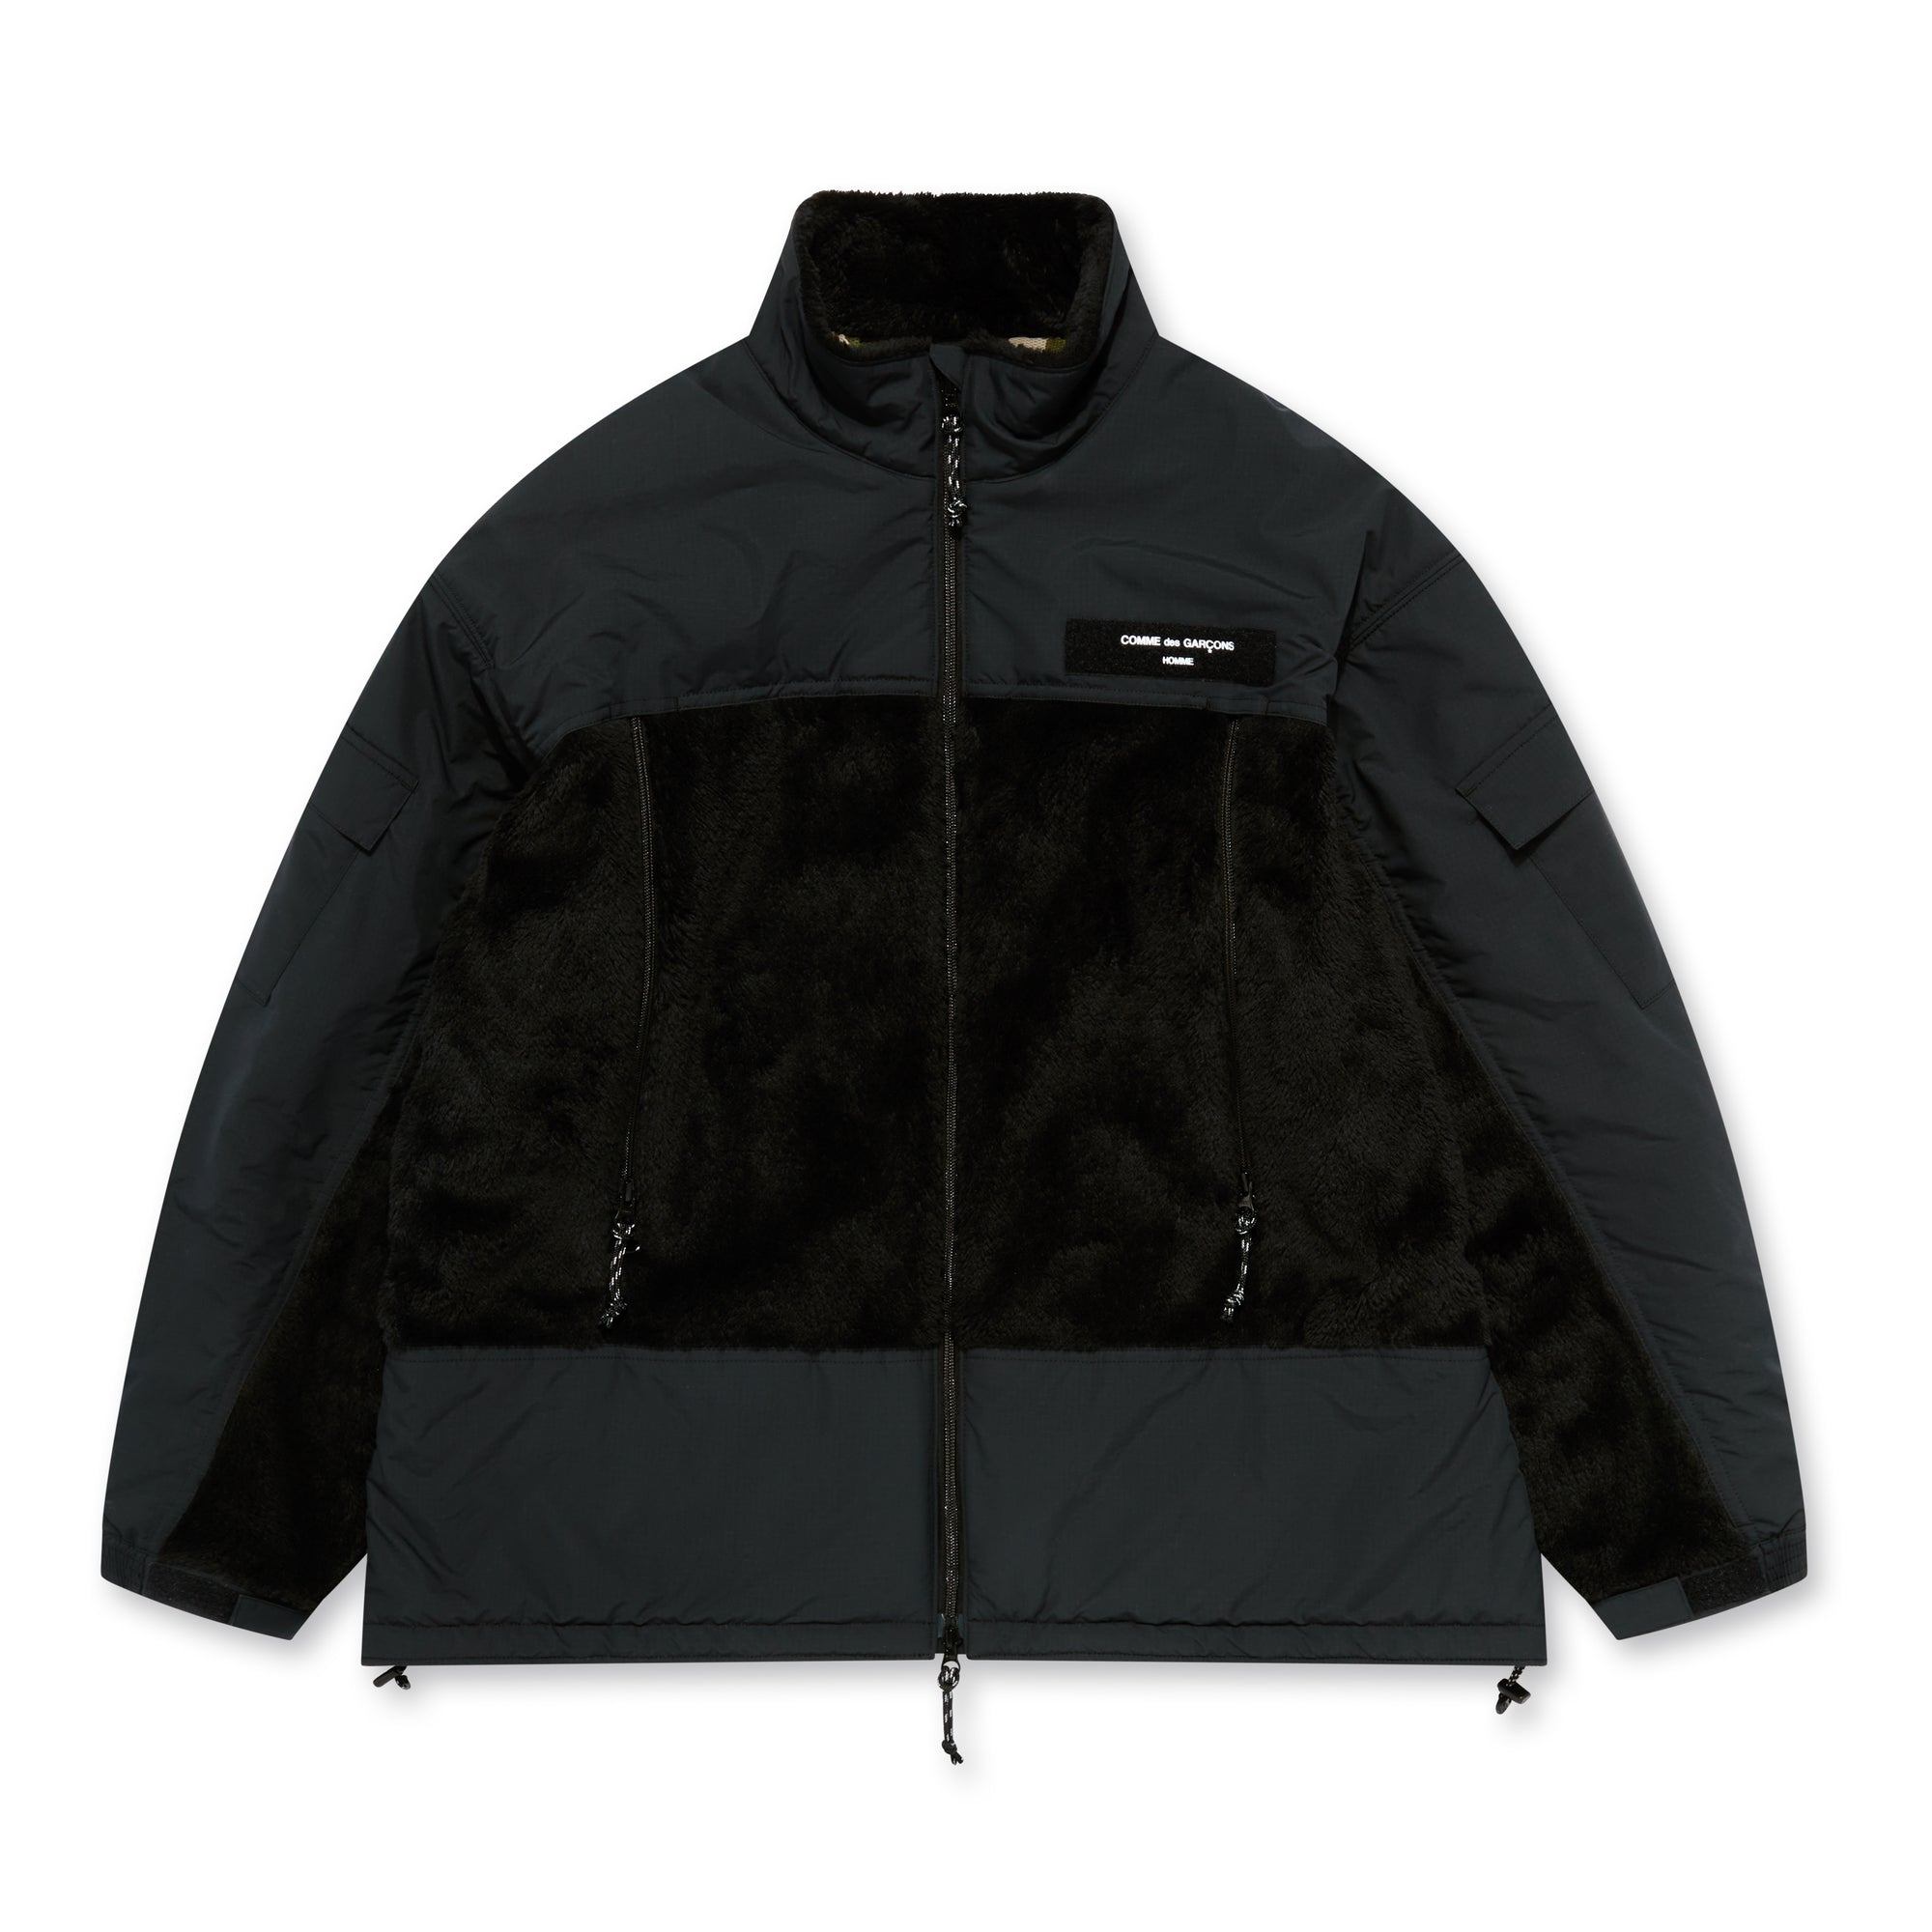 Comme des Garçons Homme - Polartec Men's Fleece Jacket - (Black) view 1